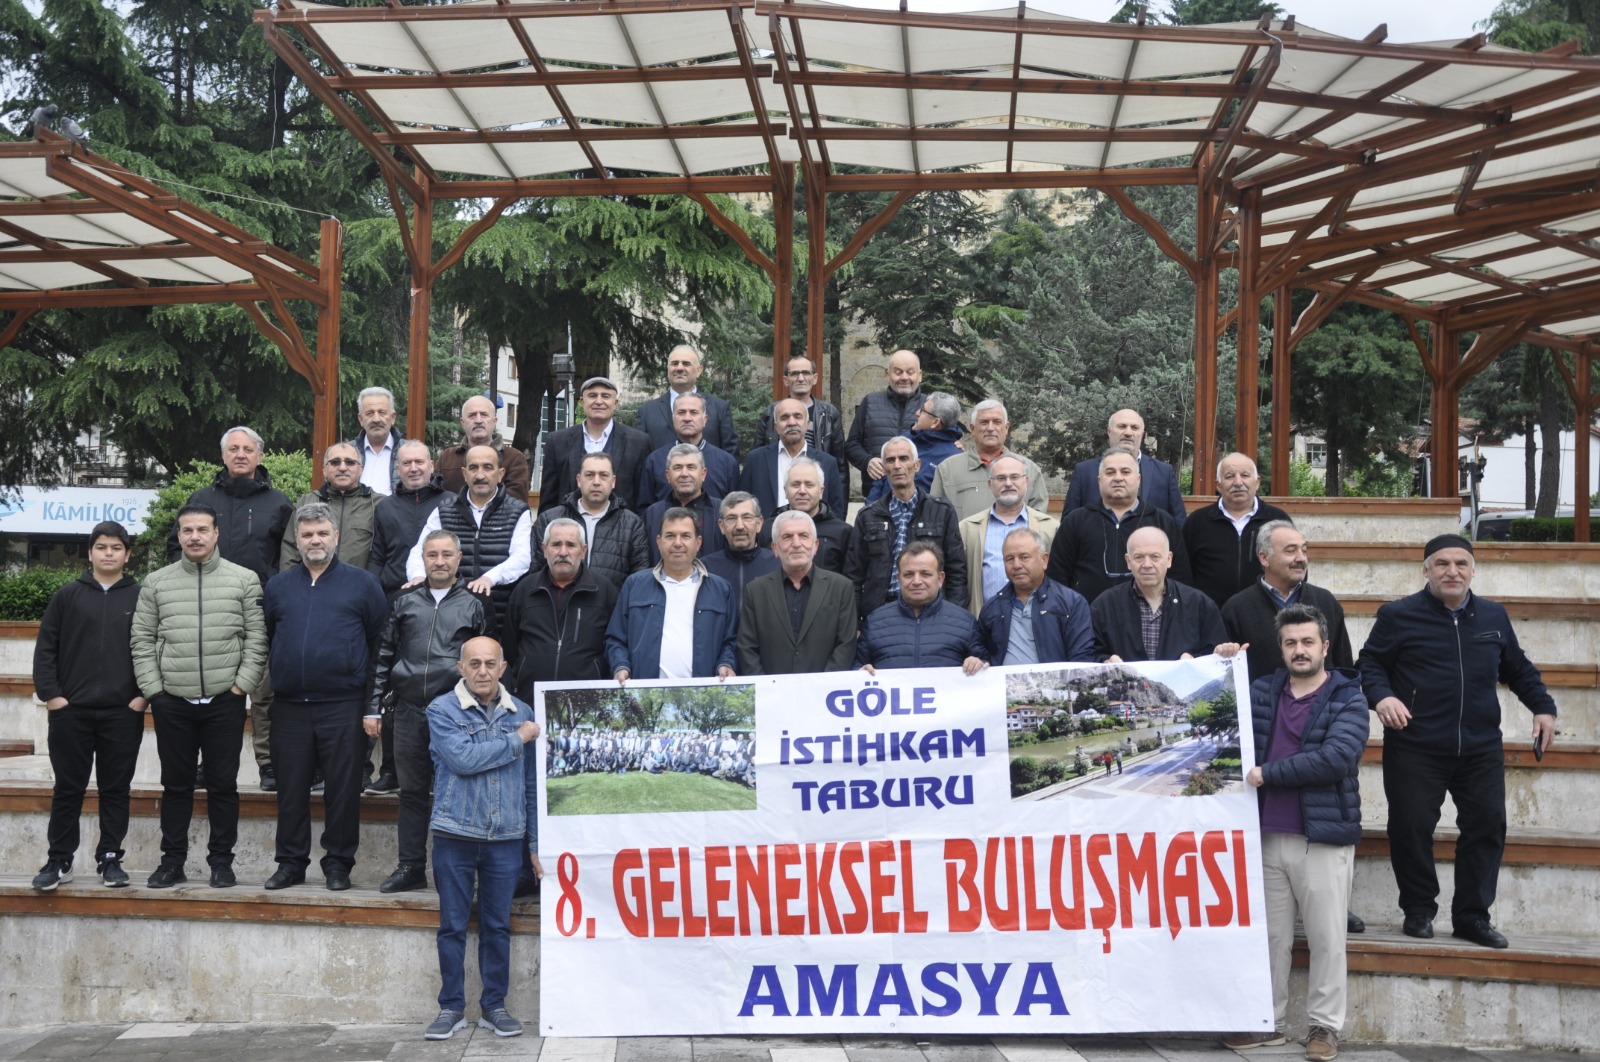 Türkiye’de bir ilki gerçekleştiren buluşma bu sefer Amasya’da gerçekleşti